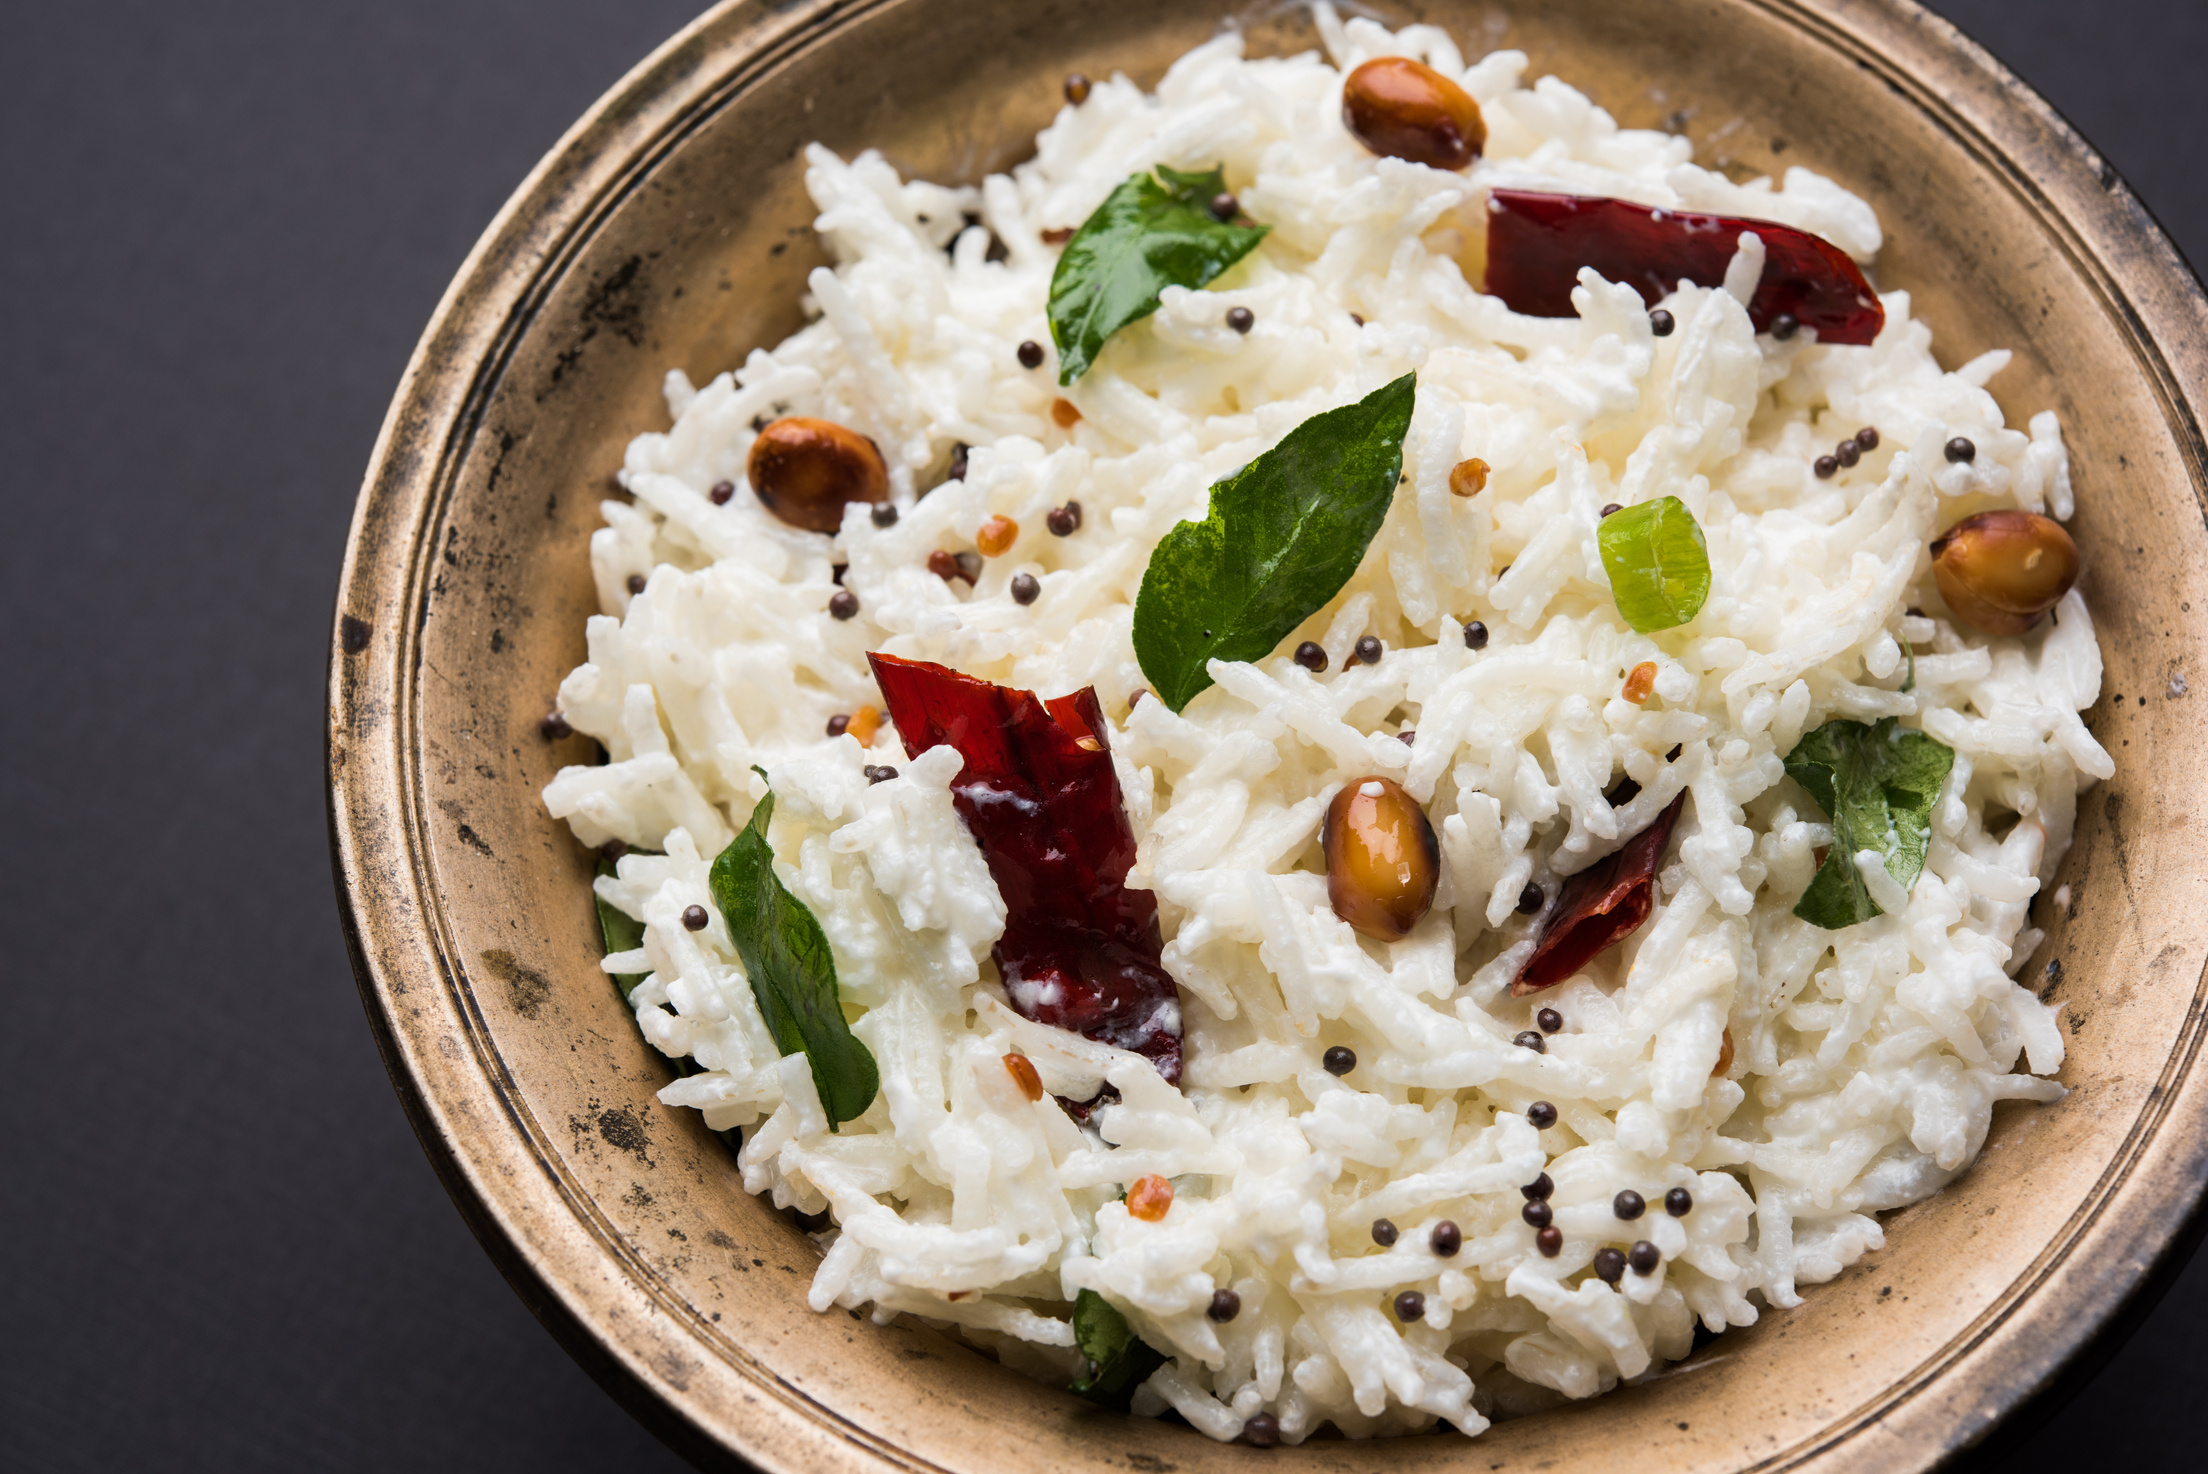 Curd Rice / Dahi Bhat / Dahi Chawal - Basmati rice mixed with yogurt or curd and seasoning